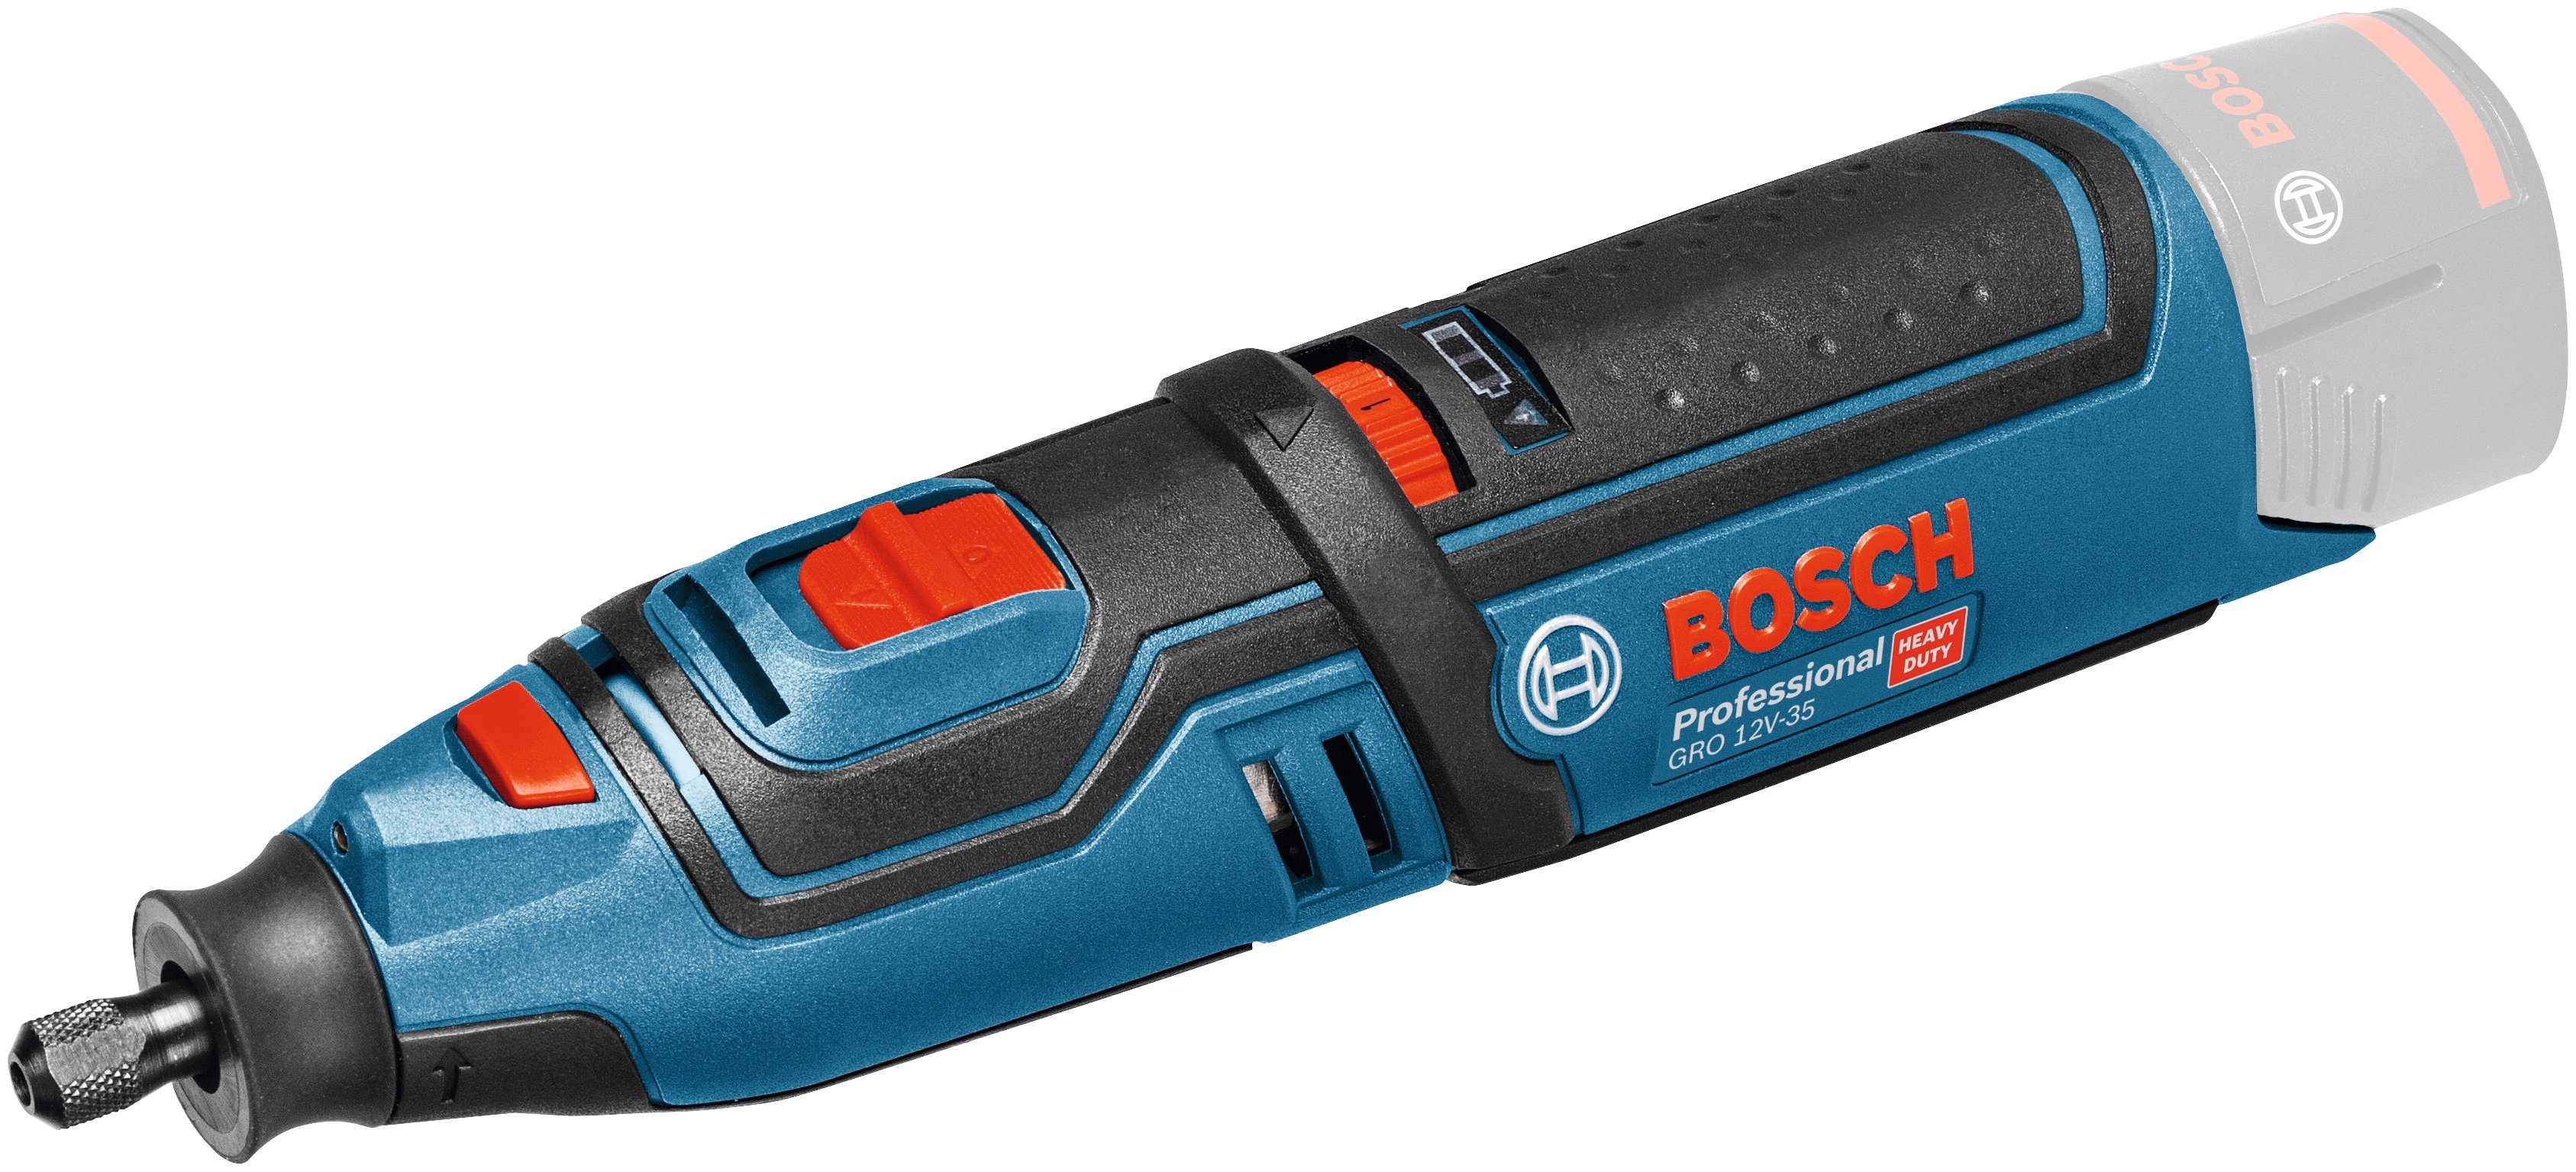 Bosch Professional Akku-Multifunktionswerkzeug GRO 12V-35 V-LI solo, 12 V,  Set, 12 V, ohne Akku, Leerlaufdrehzahl: 5000-35000 min-1